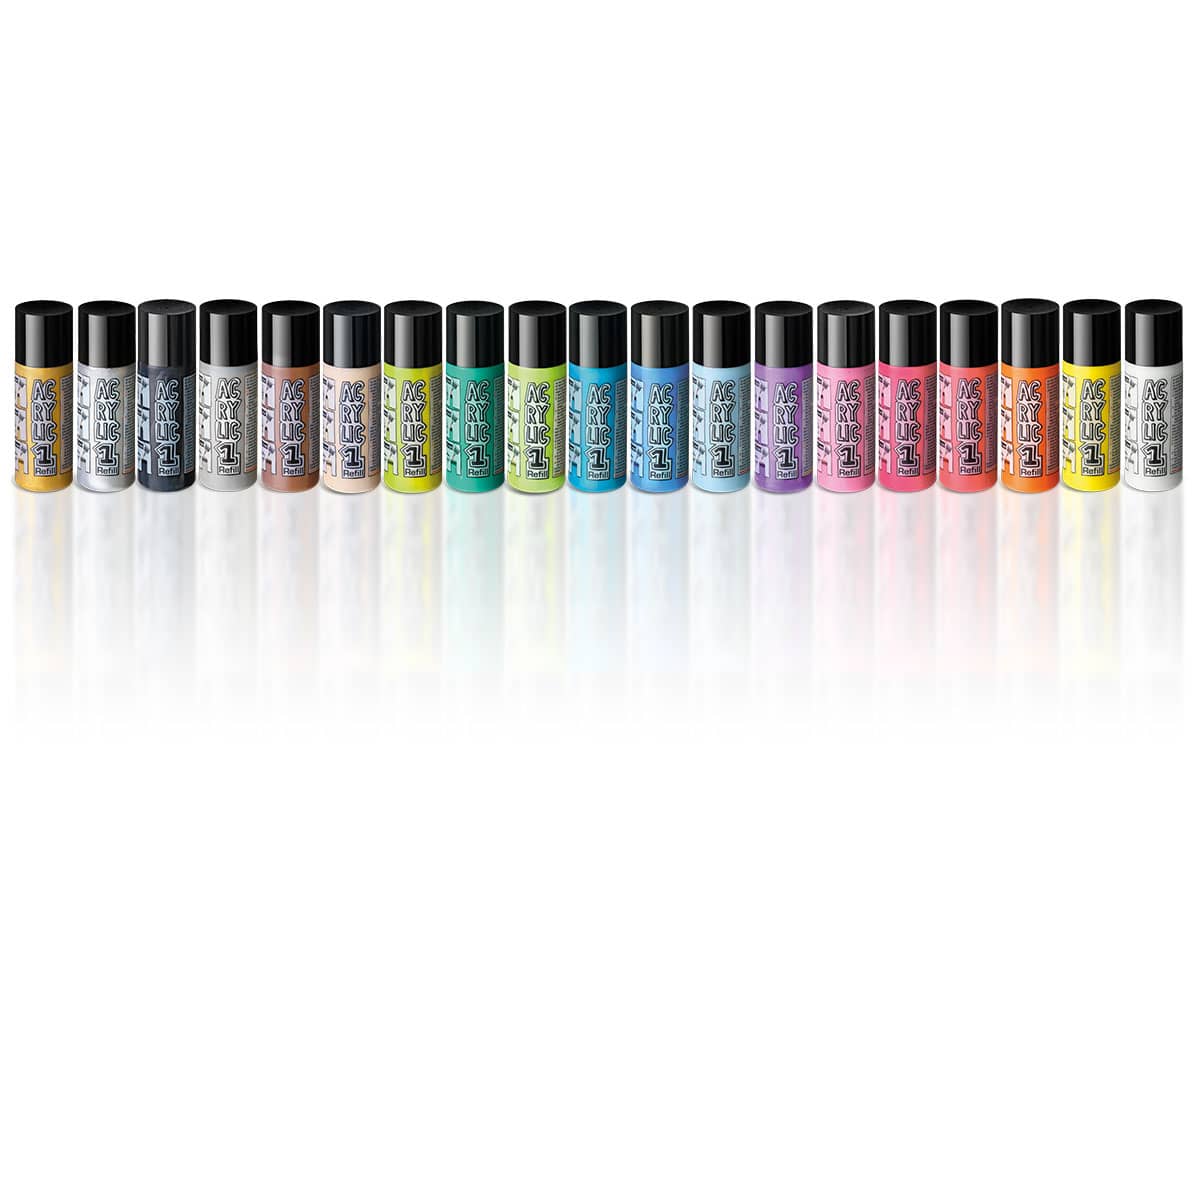 AcrylicOne Refill, 19 kleuren set